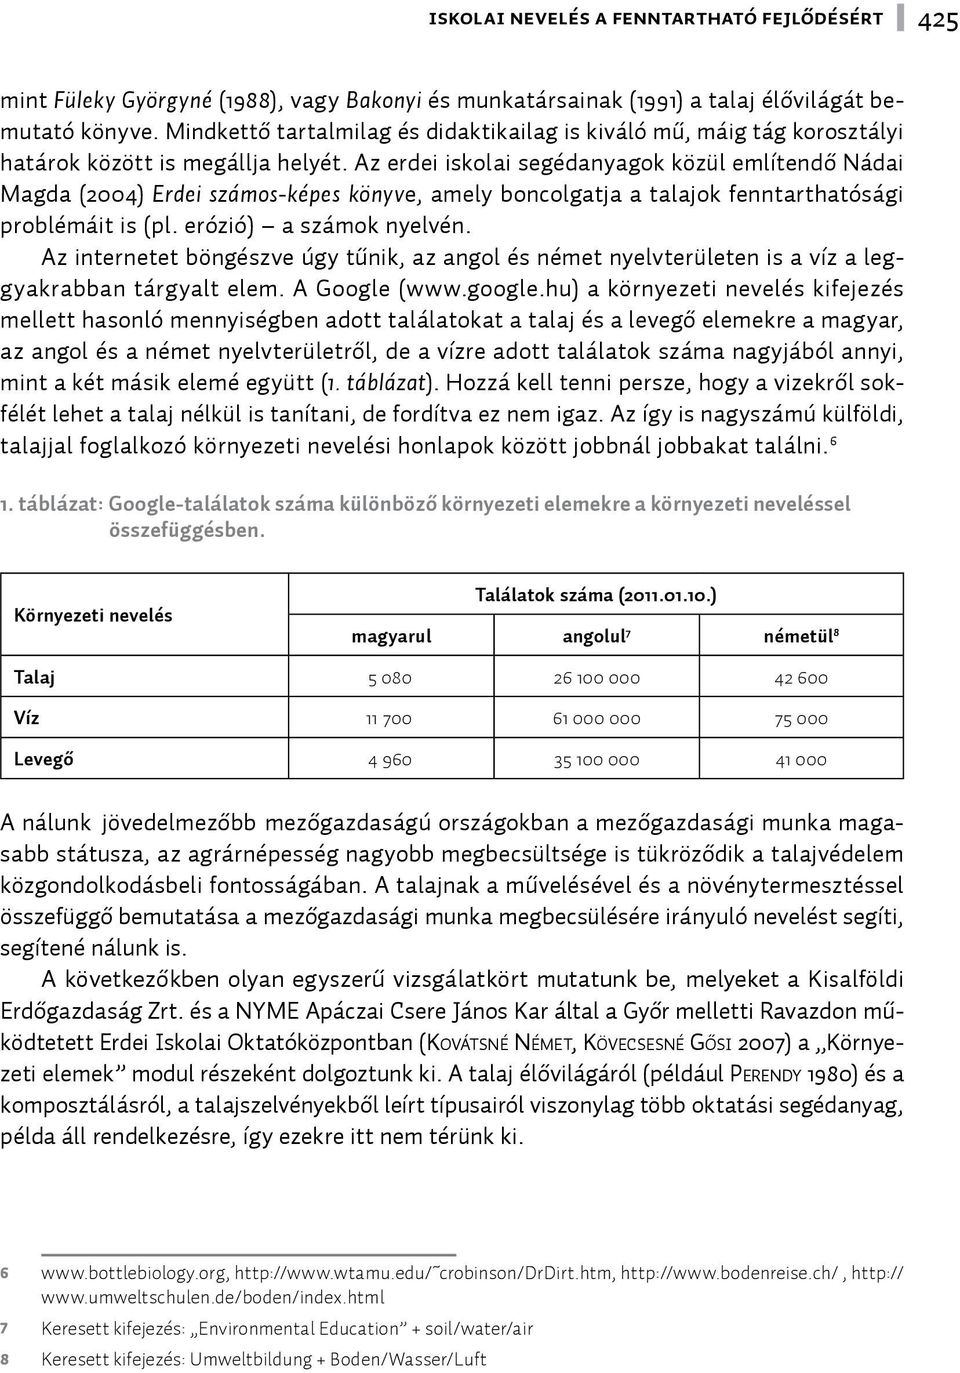 Az erdei iskolai segédanyagok közül említendő Nádai Magda (2004) Erdei számos-képes könyve, amely boncolgatja a talajok fenntarthatósági problémáit is (pl. erózió) a számok nyelvén.